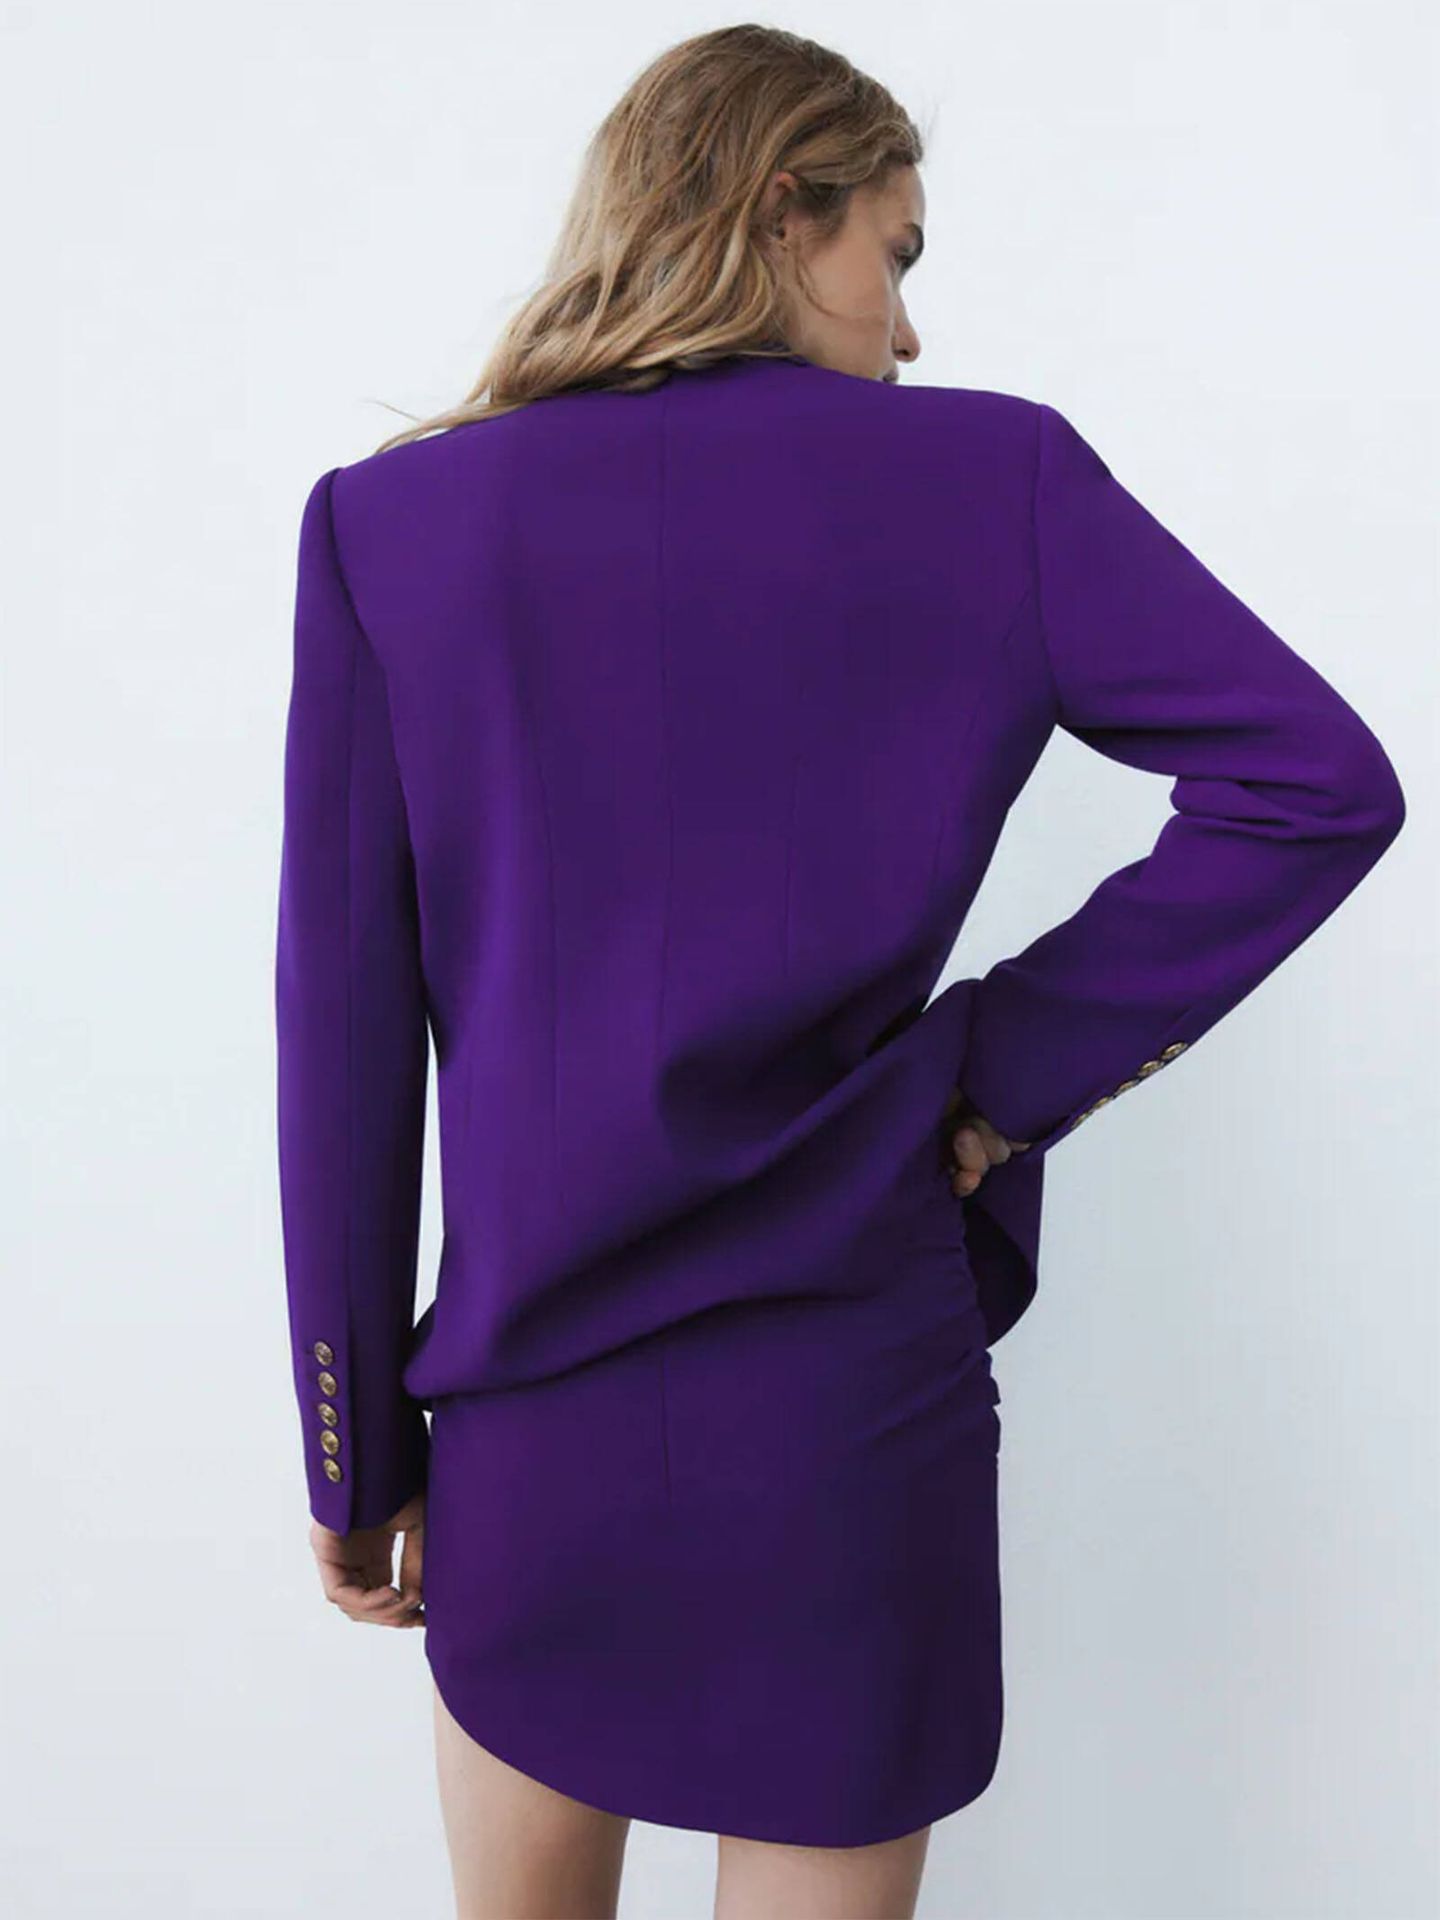 El conjunto ideal de americana y falda de Zara. (Zara/Cortesía)